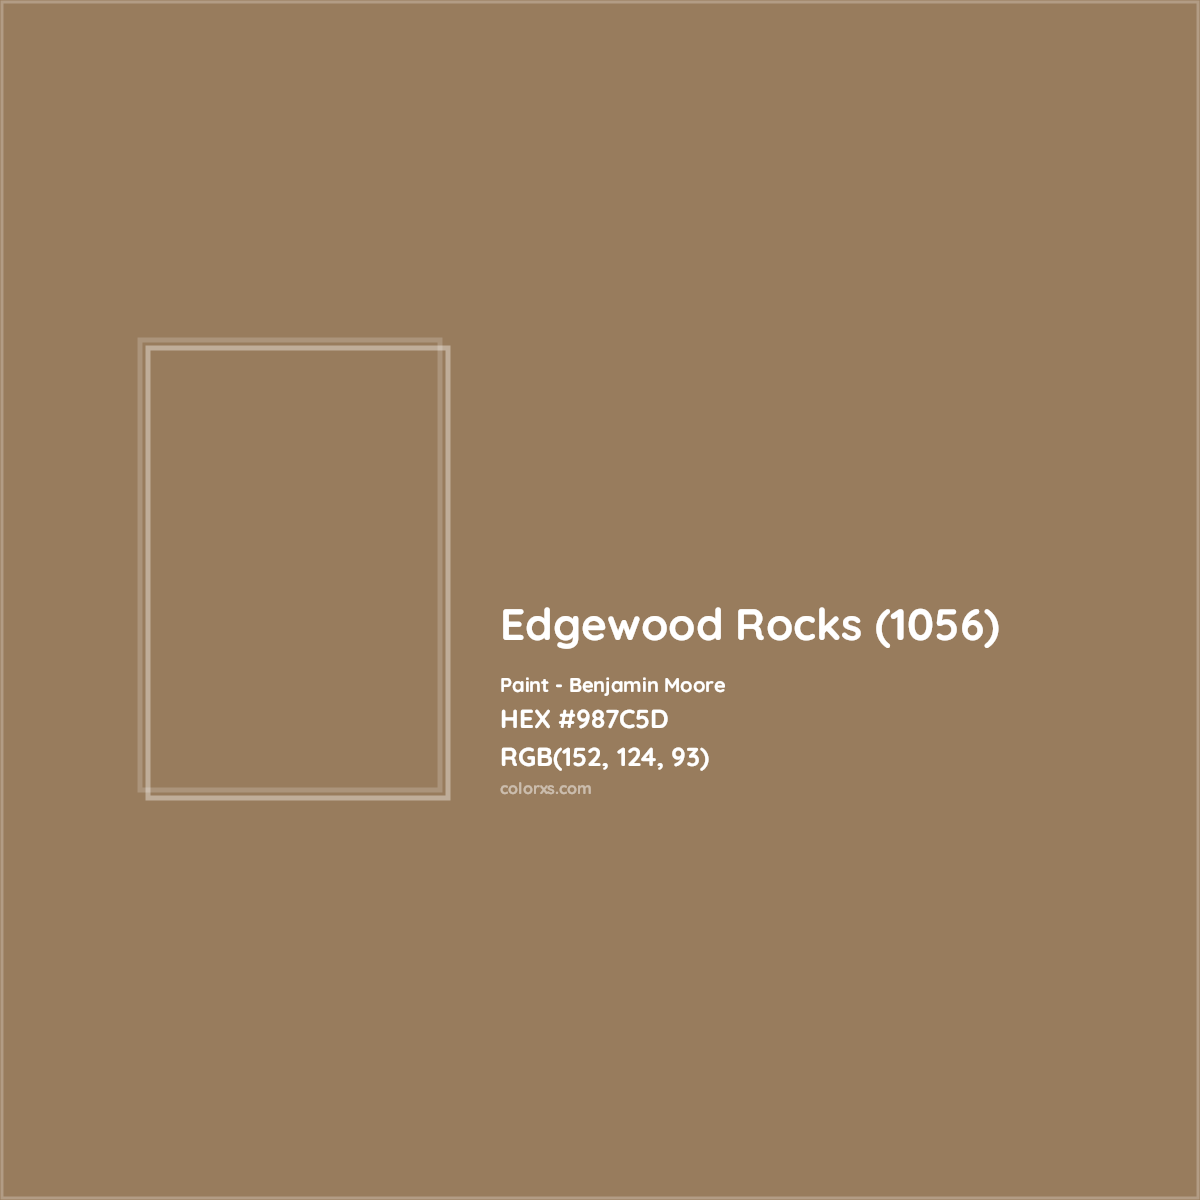 HEX #987C5D Edgewood Rocks (1056) Paint Benjamin Moore - Color Code